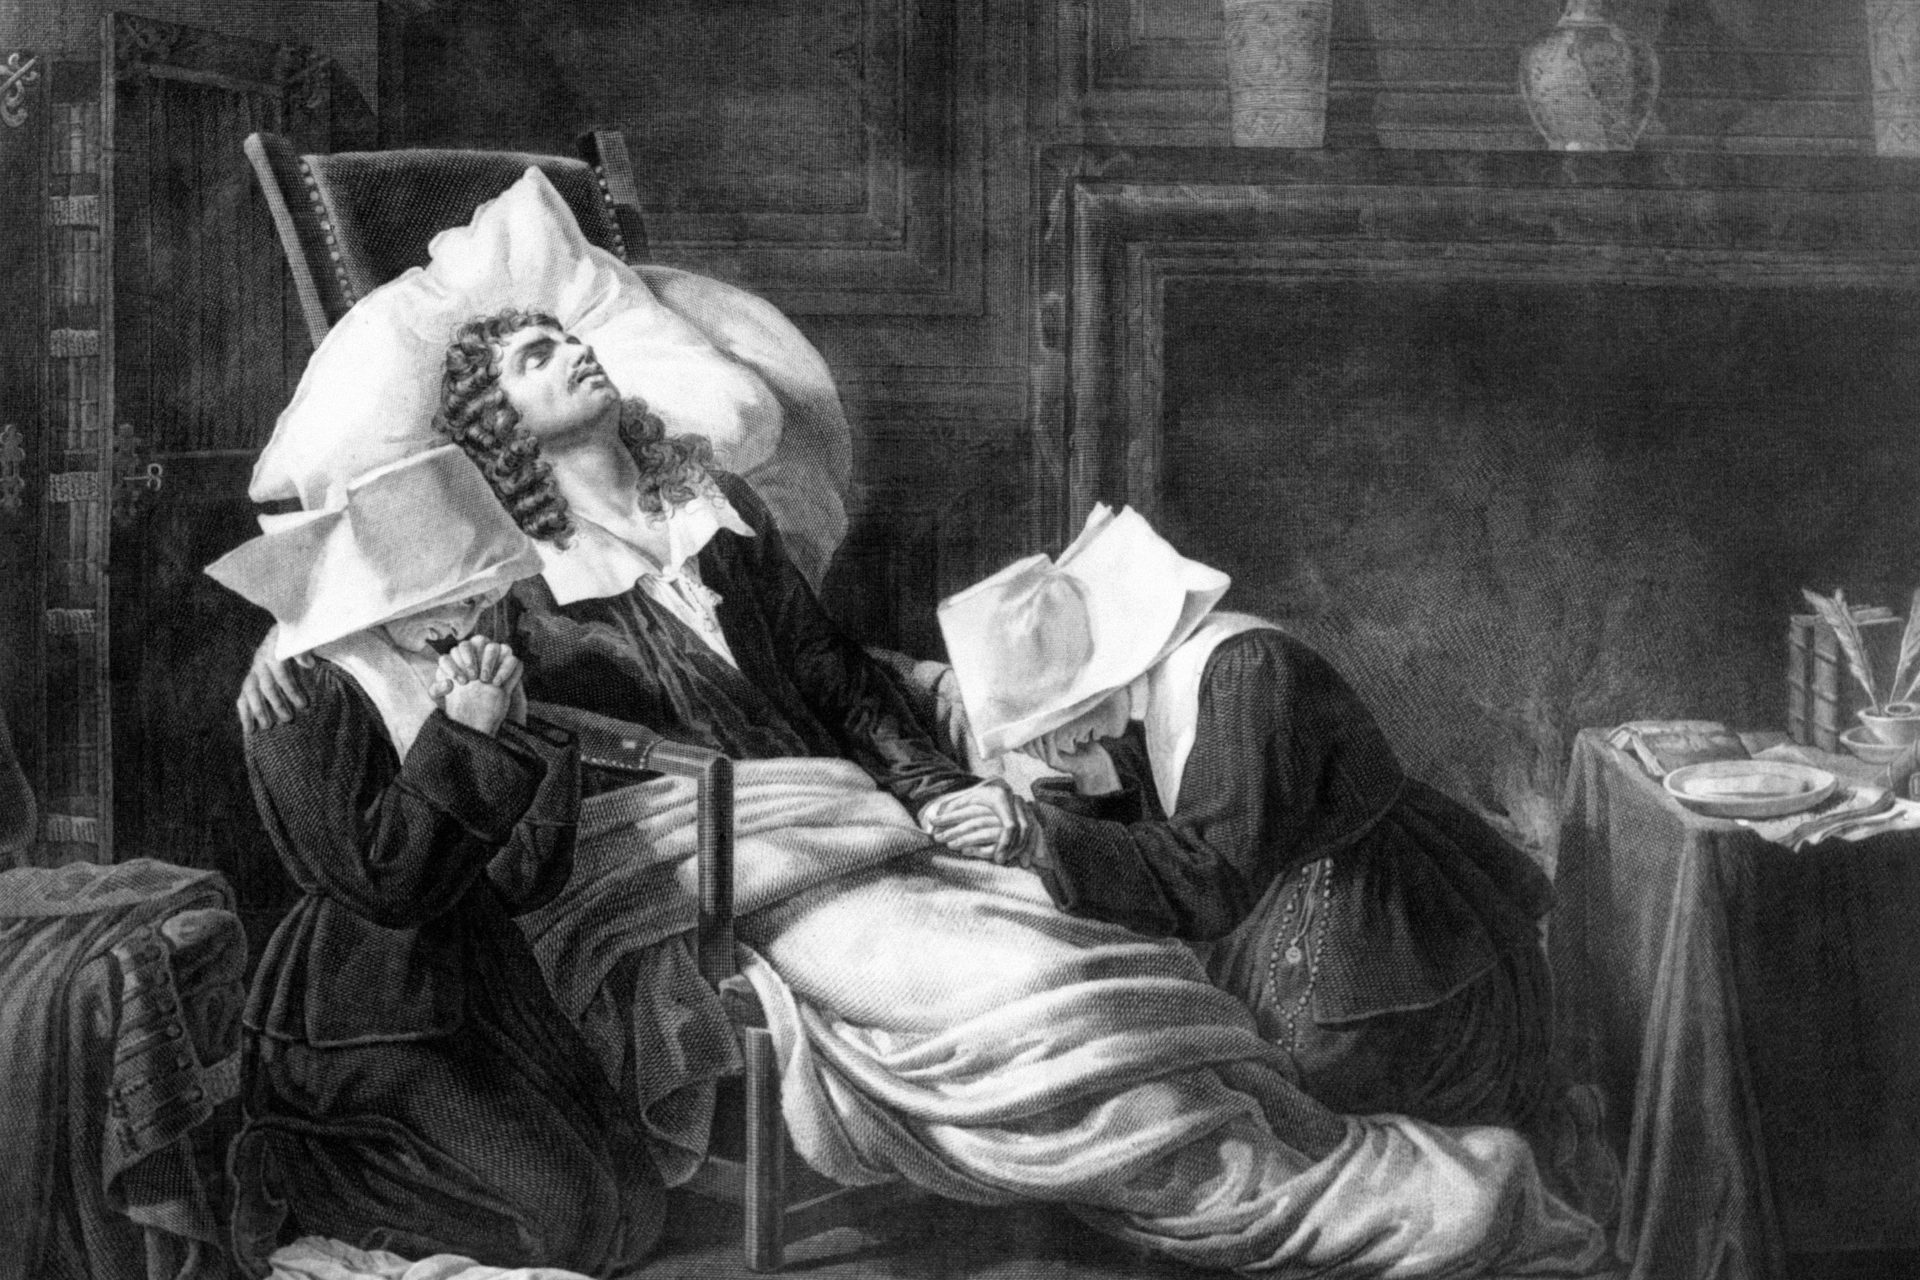 Molière (1622-1673)“Aquí yace Molière, el rey de los actores. En estos momentos hace de muerto y de verdad que lo hace bien”.